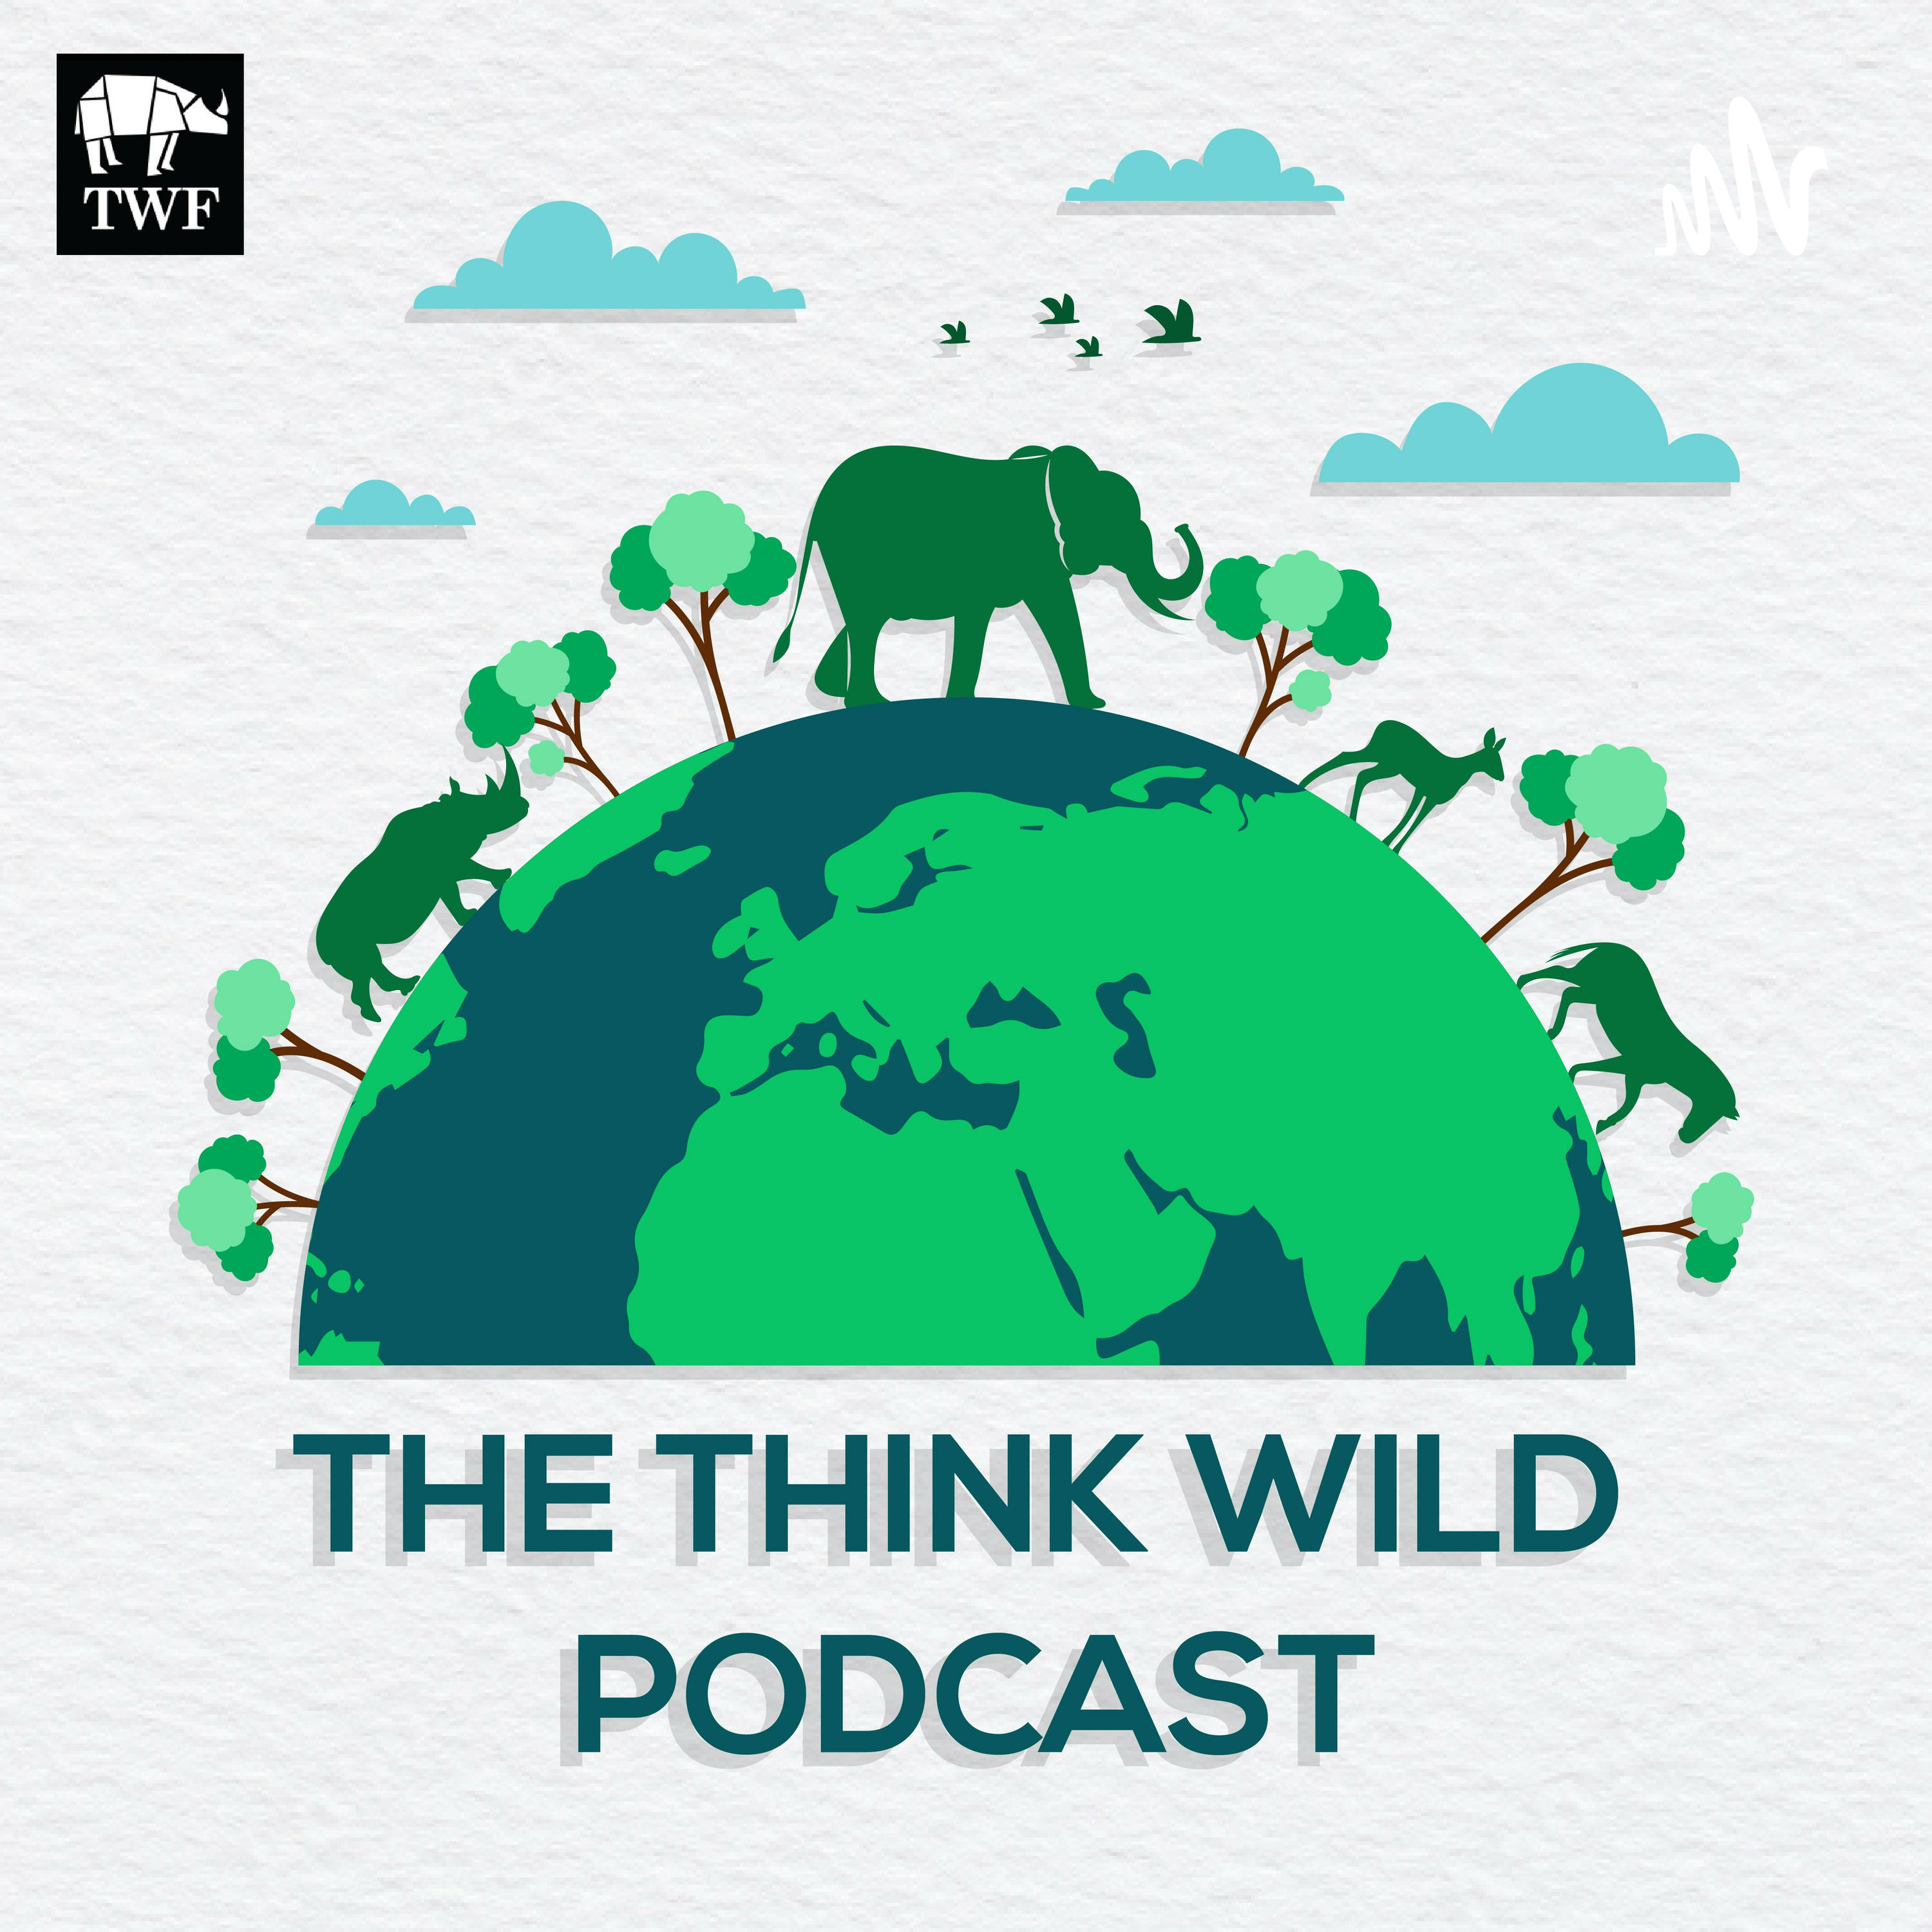 Episode 53: Bringing back the Markhor with Tanushree Srivastava from Wildlife Trust of India